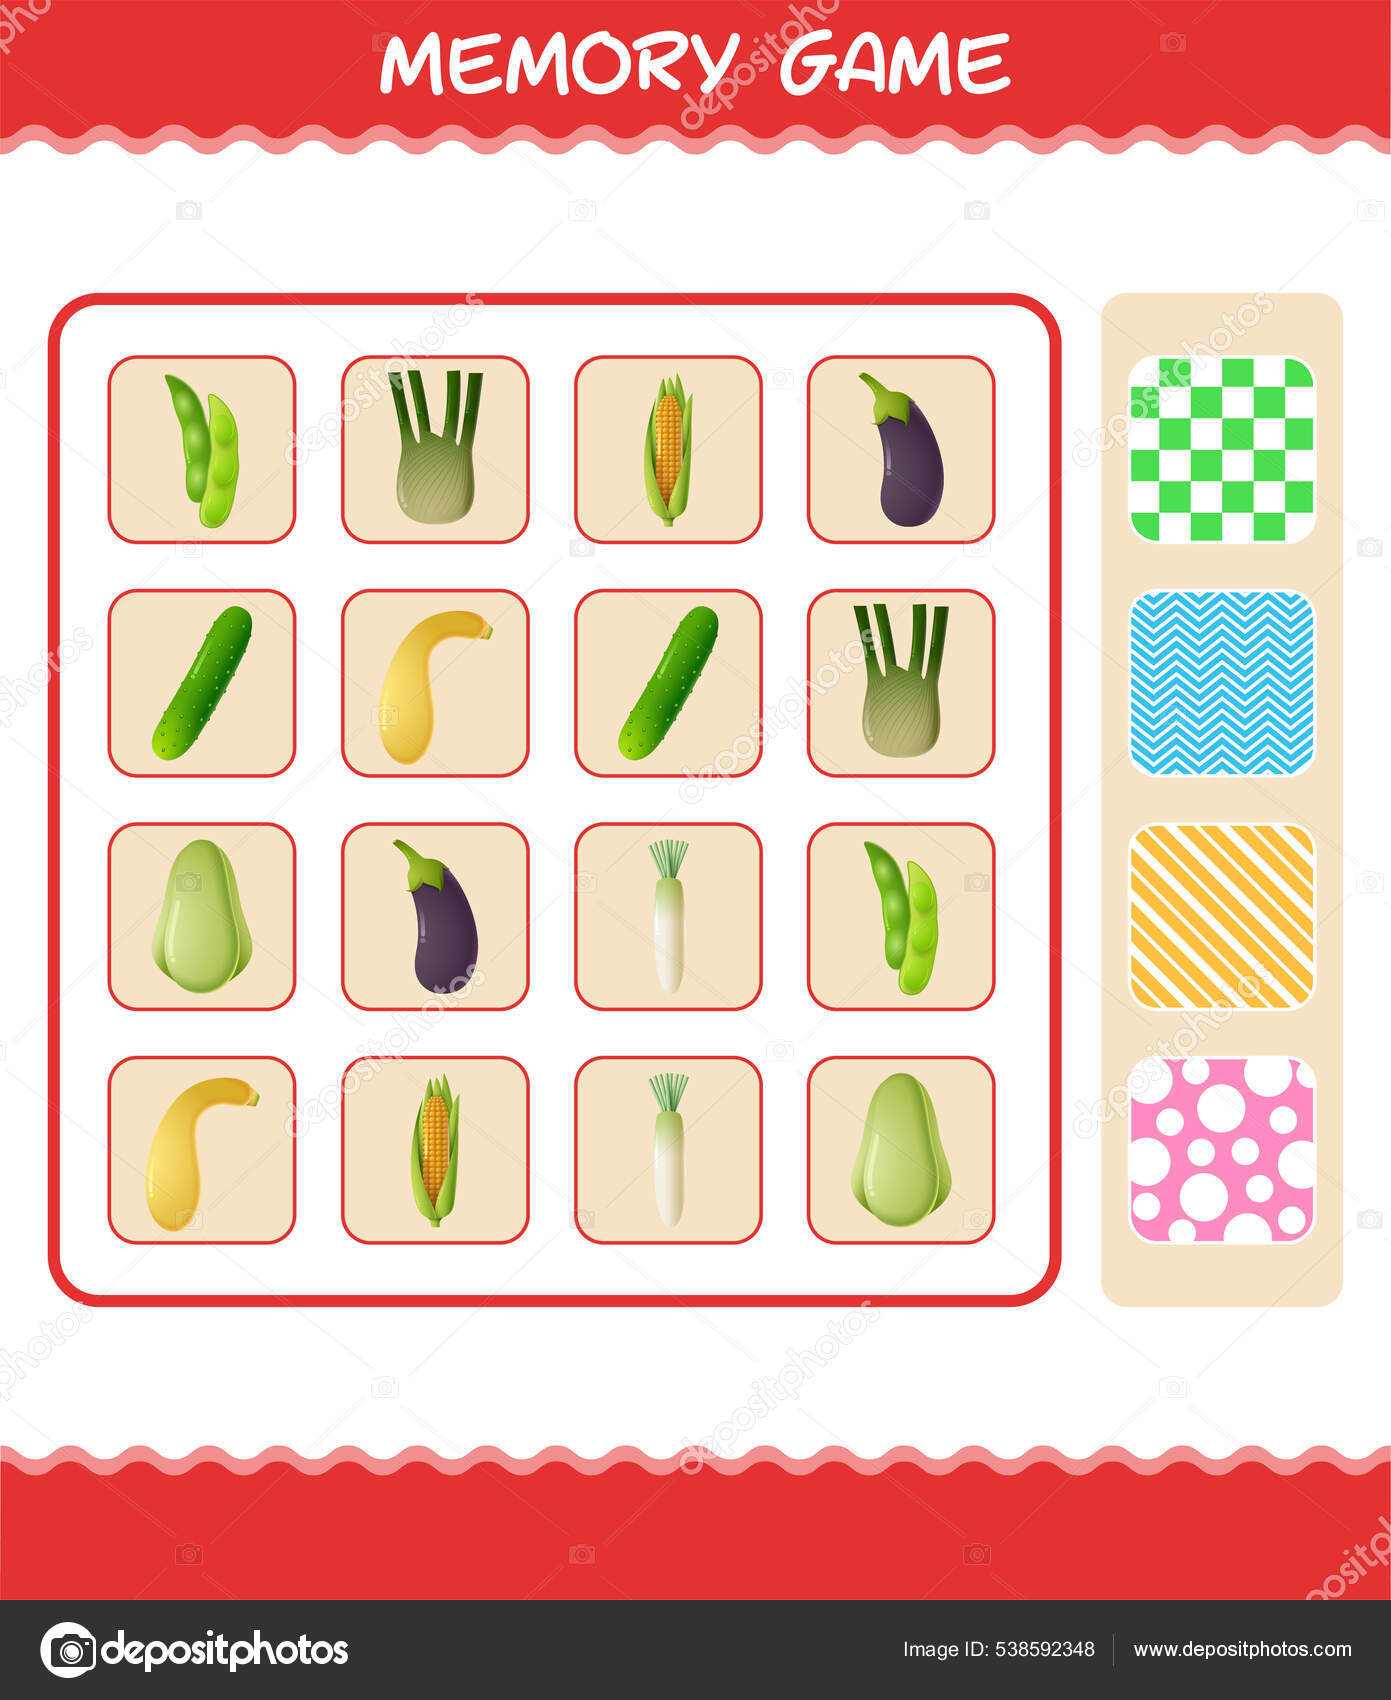 Play to learn - alfabeto em inglês - jogo da memória - Outros